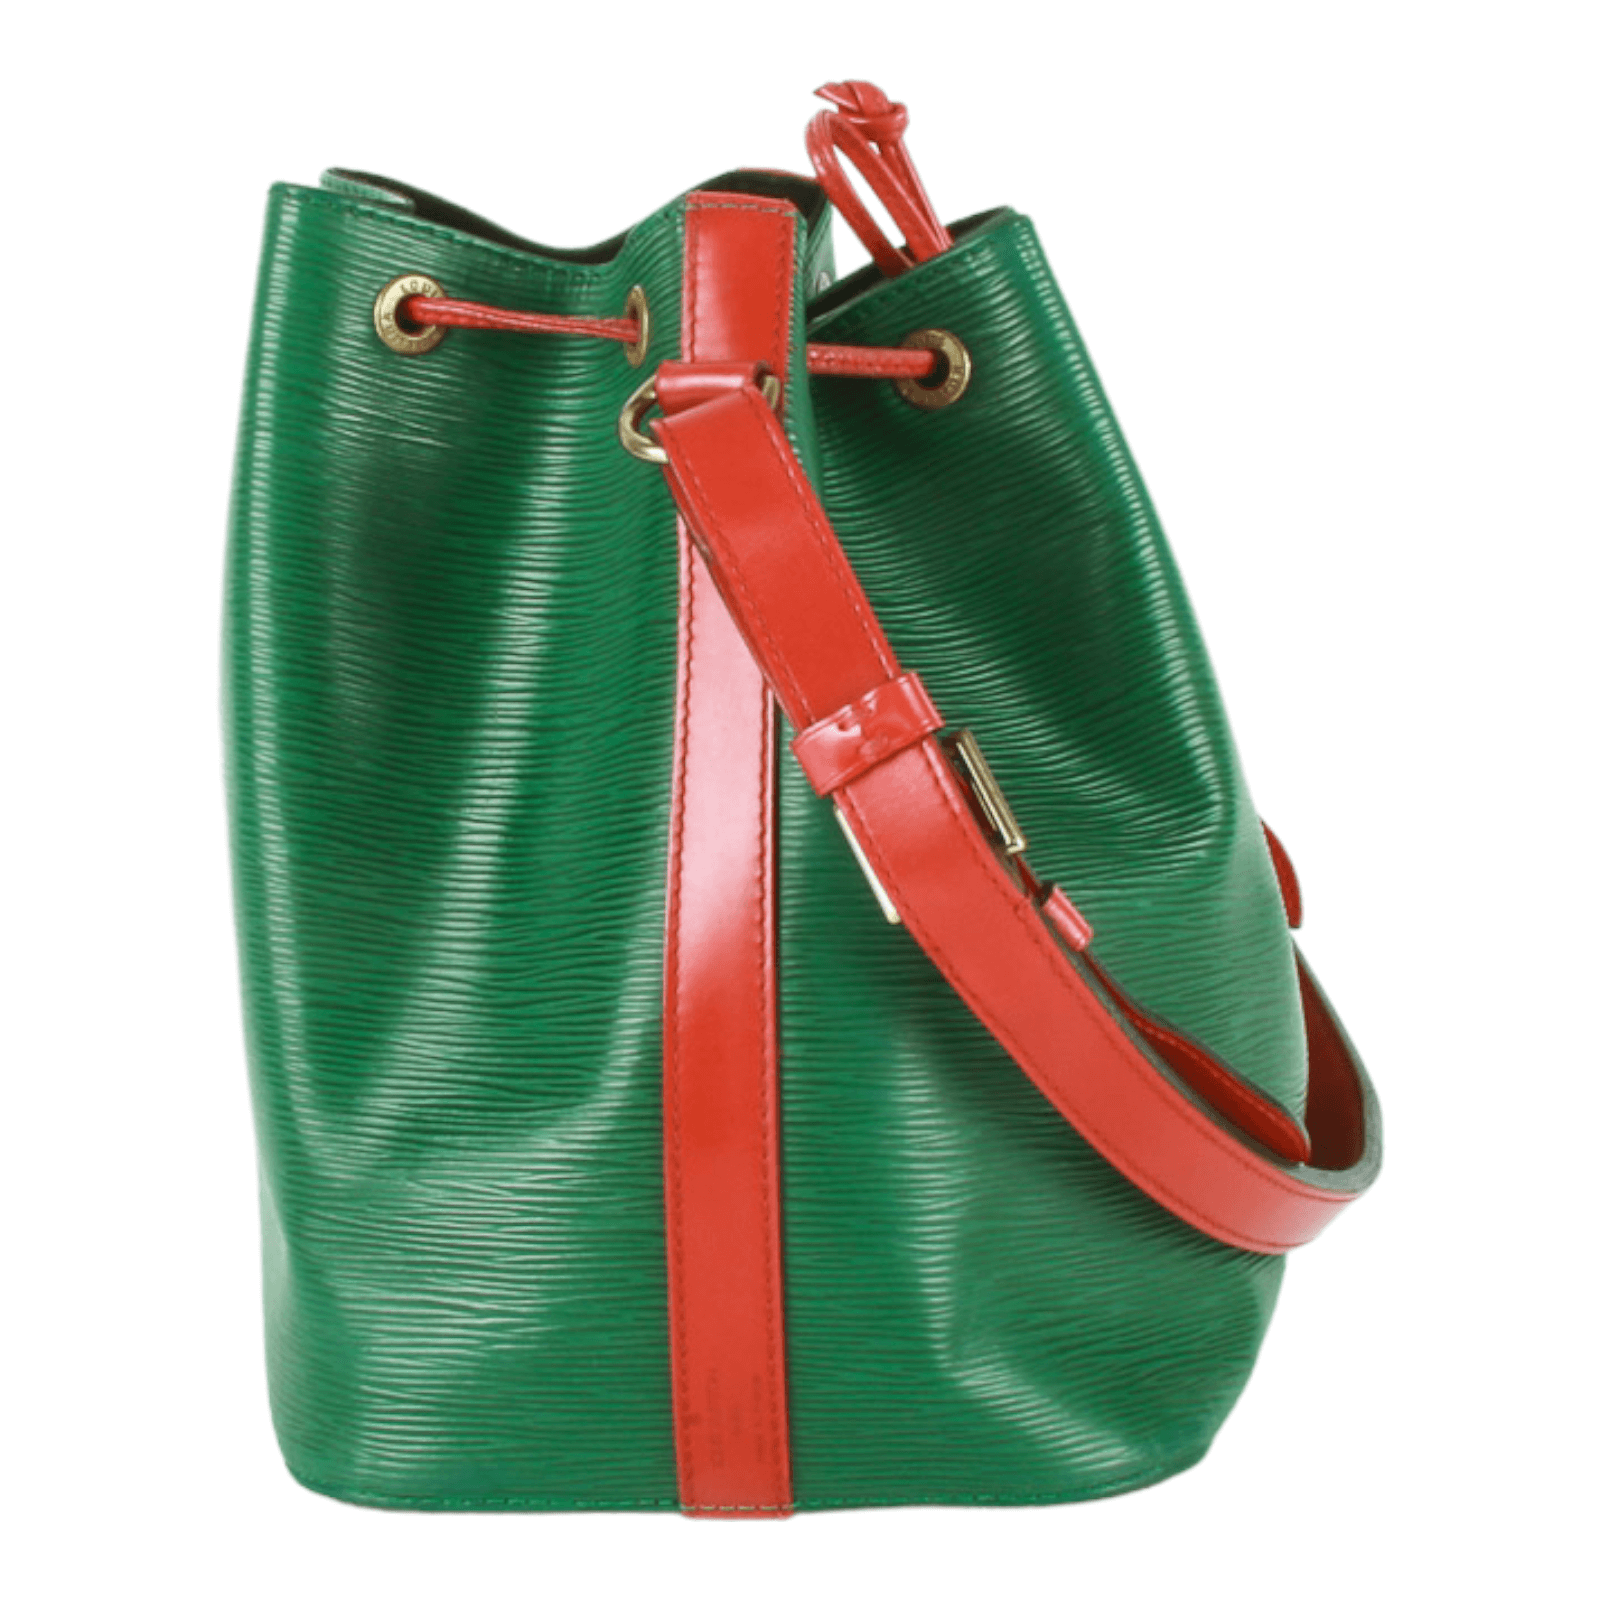 Louis Vuitton Epi Bi-Colour Noe Shoulder Bag